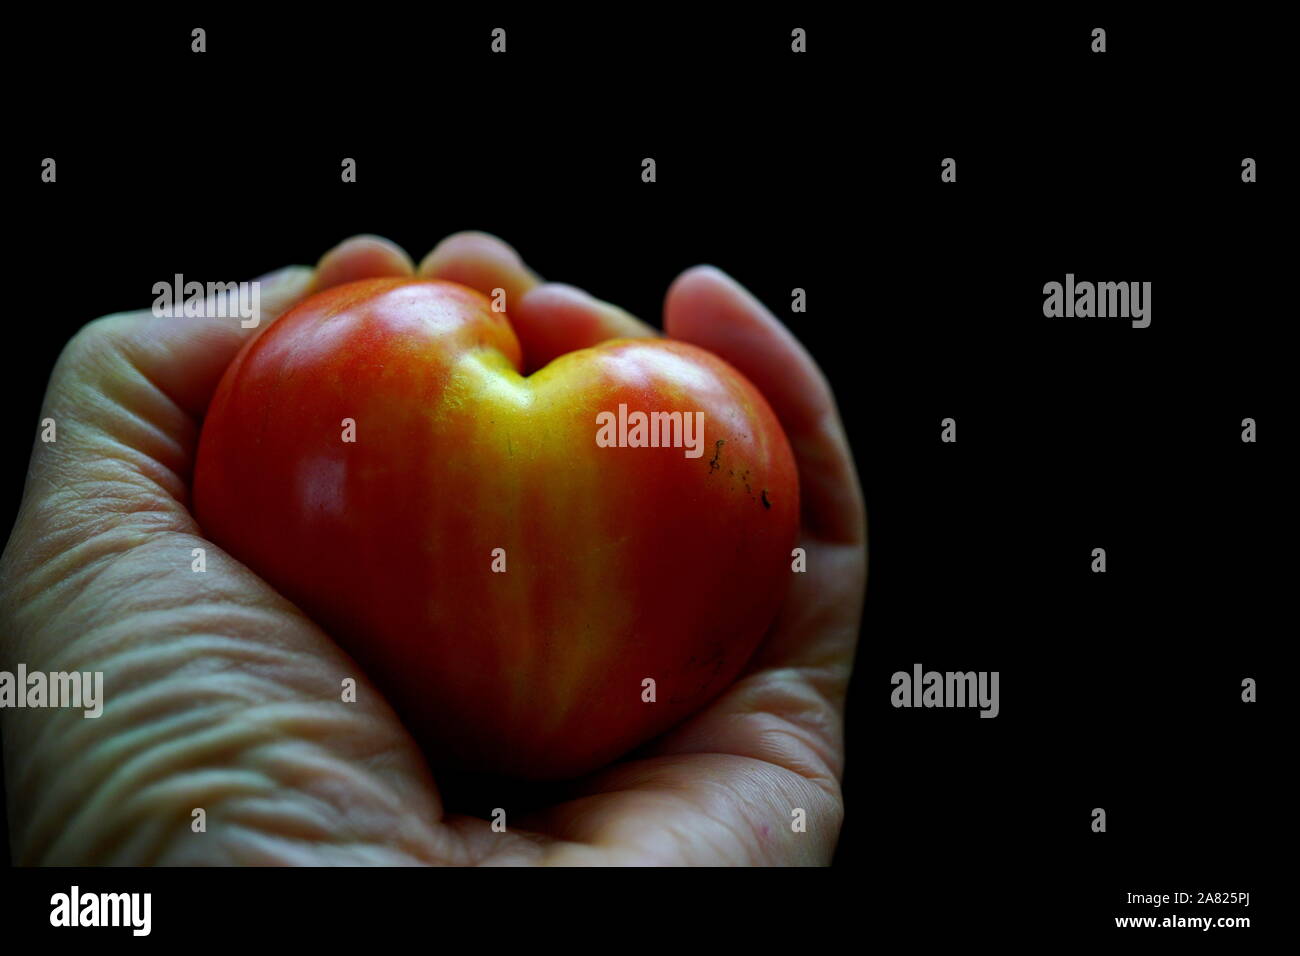 Gesundes Herz Konzept - Hand herzform Herzen tomate Tomate (Ox) mit dunklem Hintergrund' ist Ihre Gesundheit in die eigenen Hände' Stockfoto